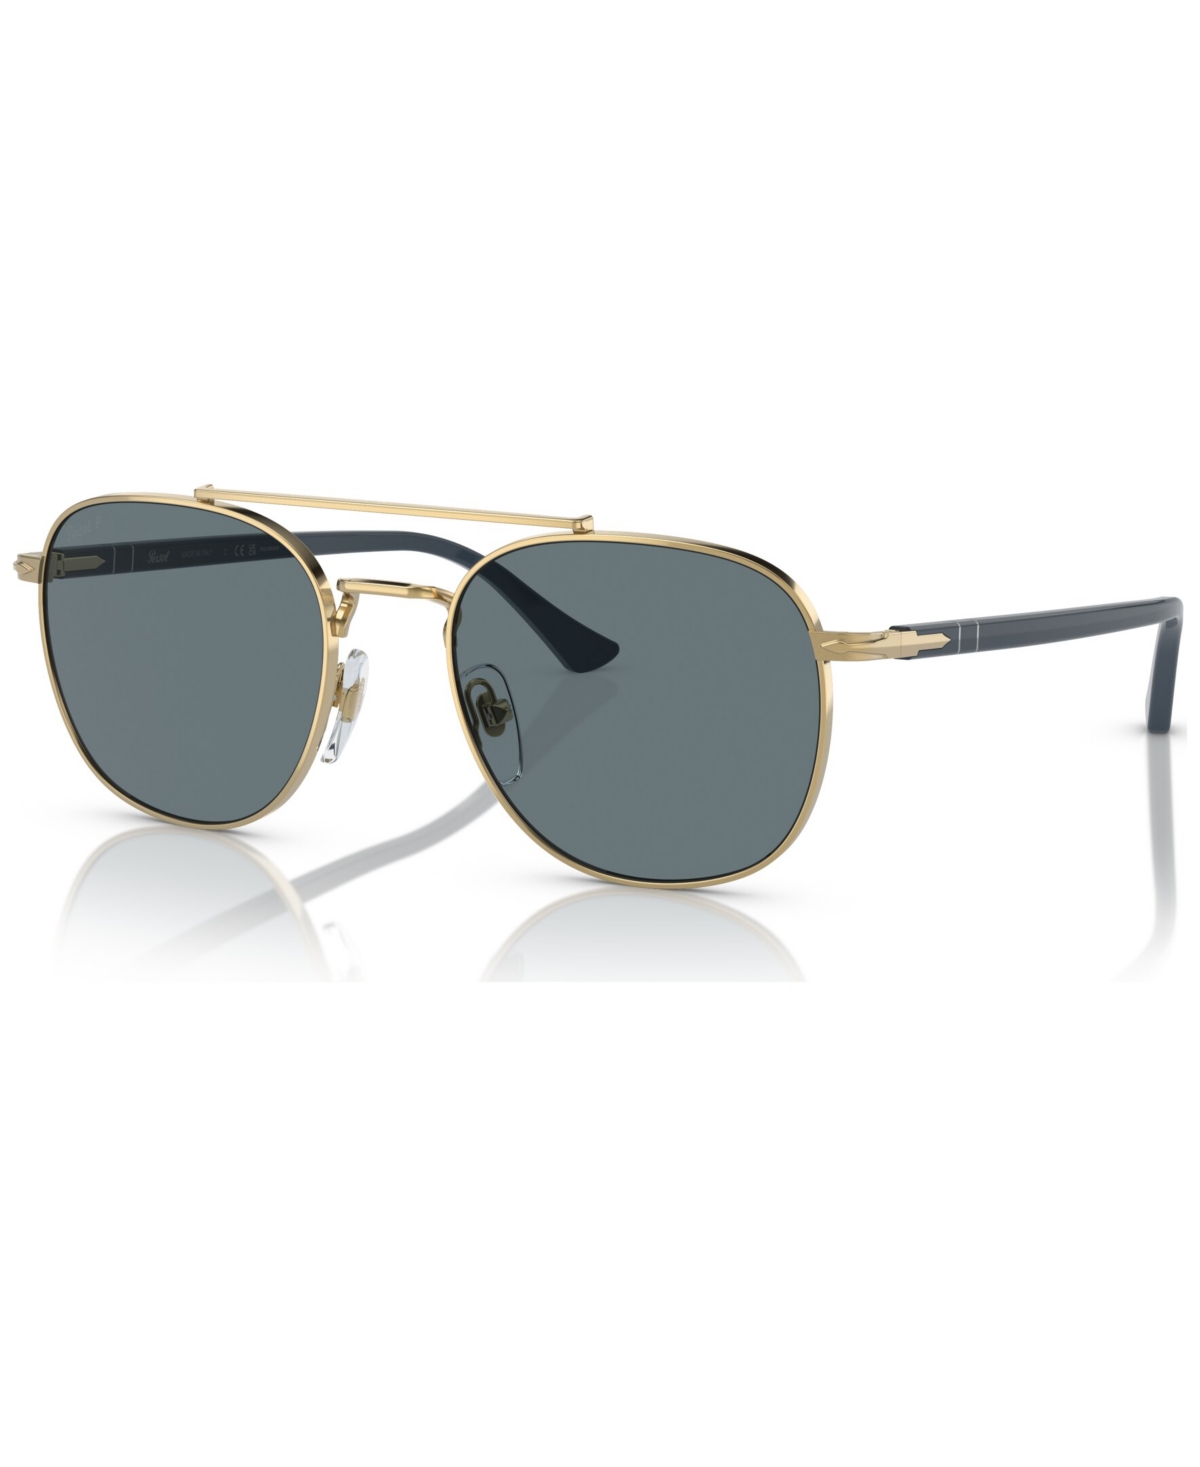 Persol Unisex Polarized Sunglasses, Po1006s In Gold-tone